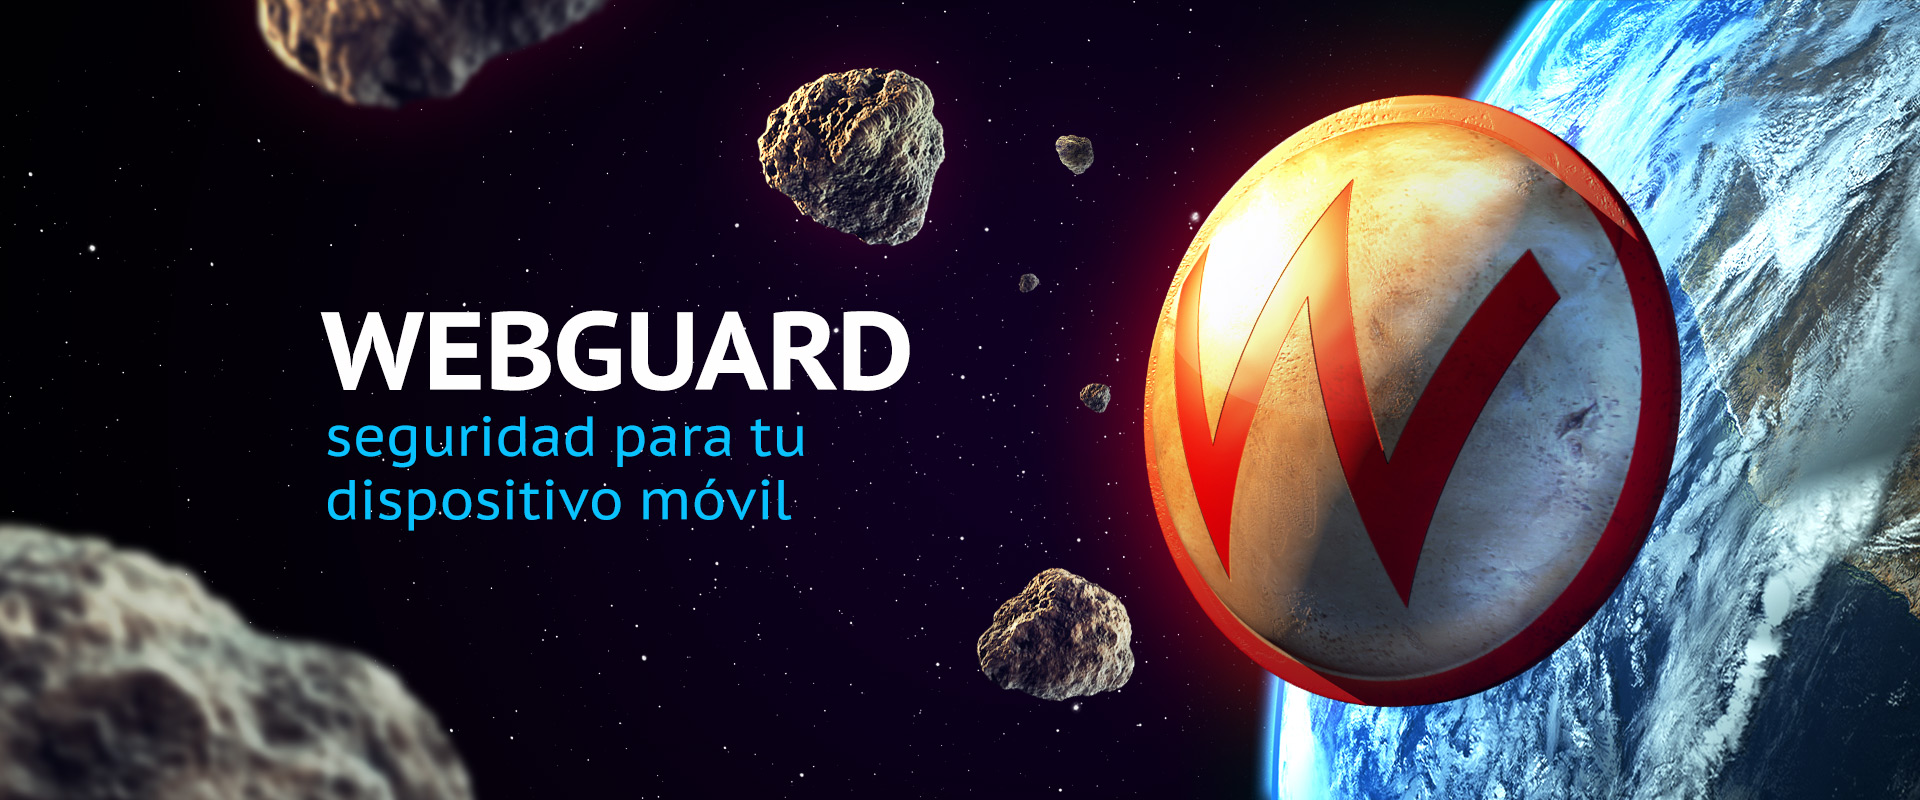 slide_app_webguard_es